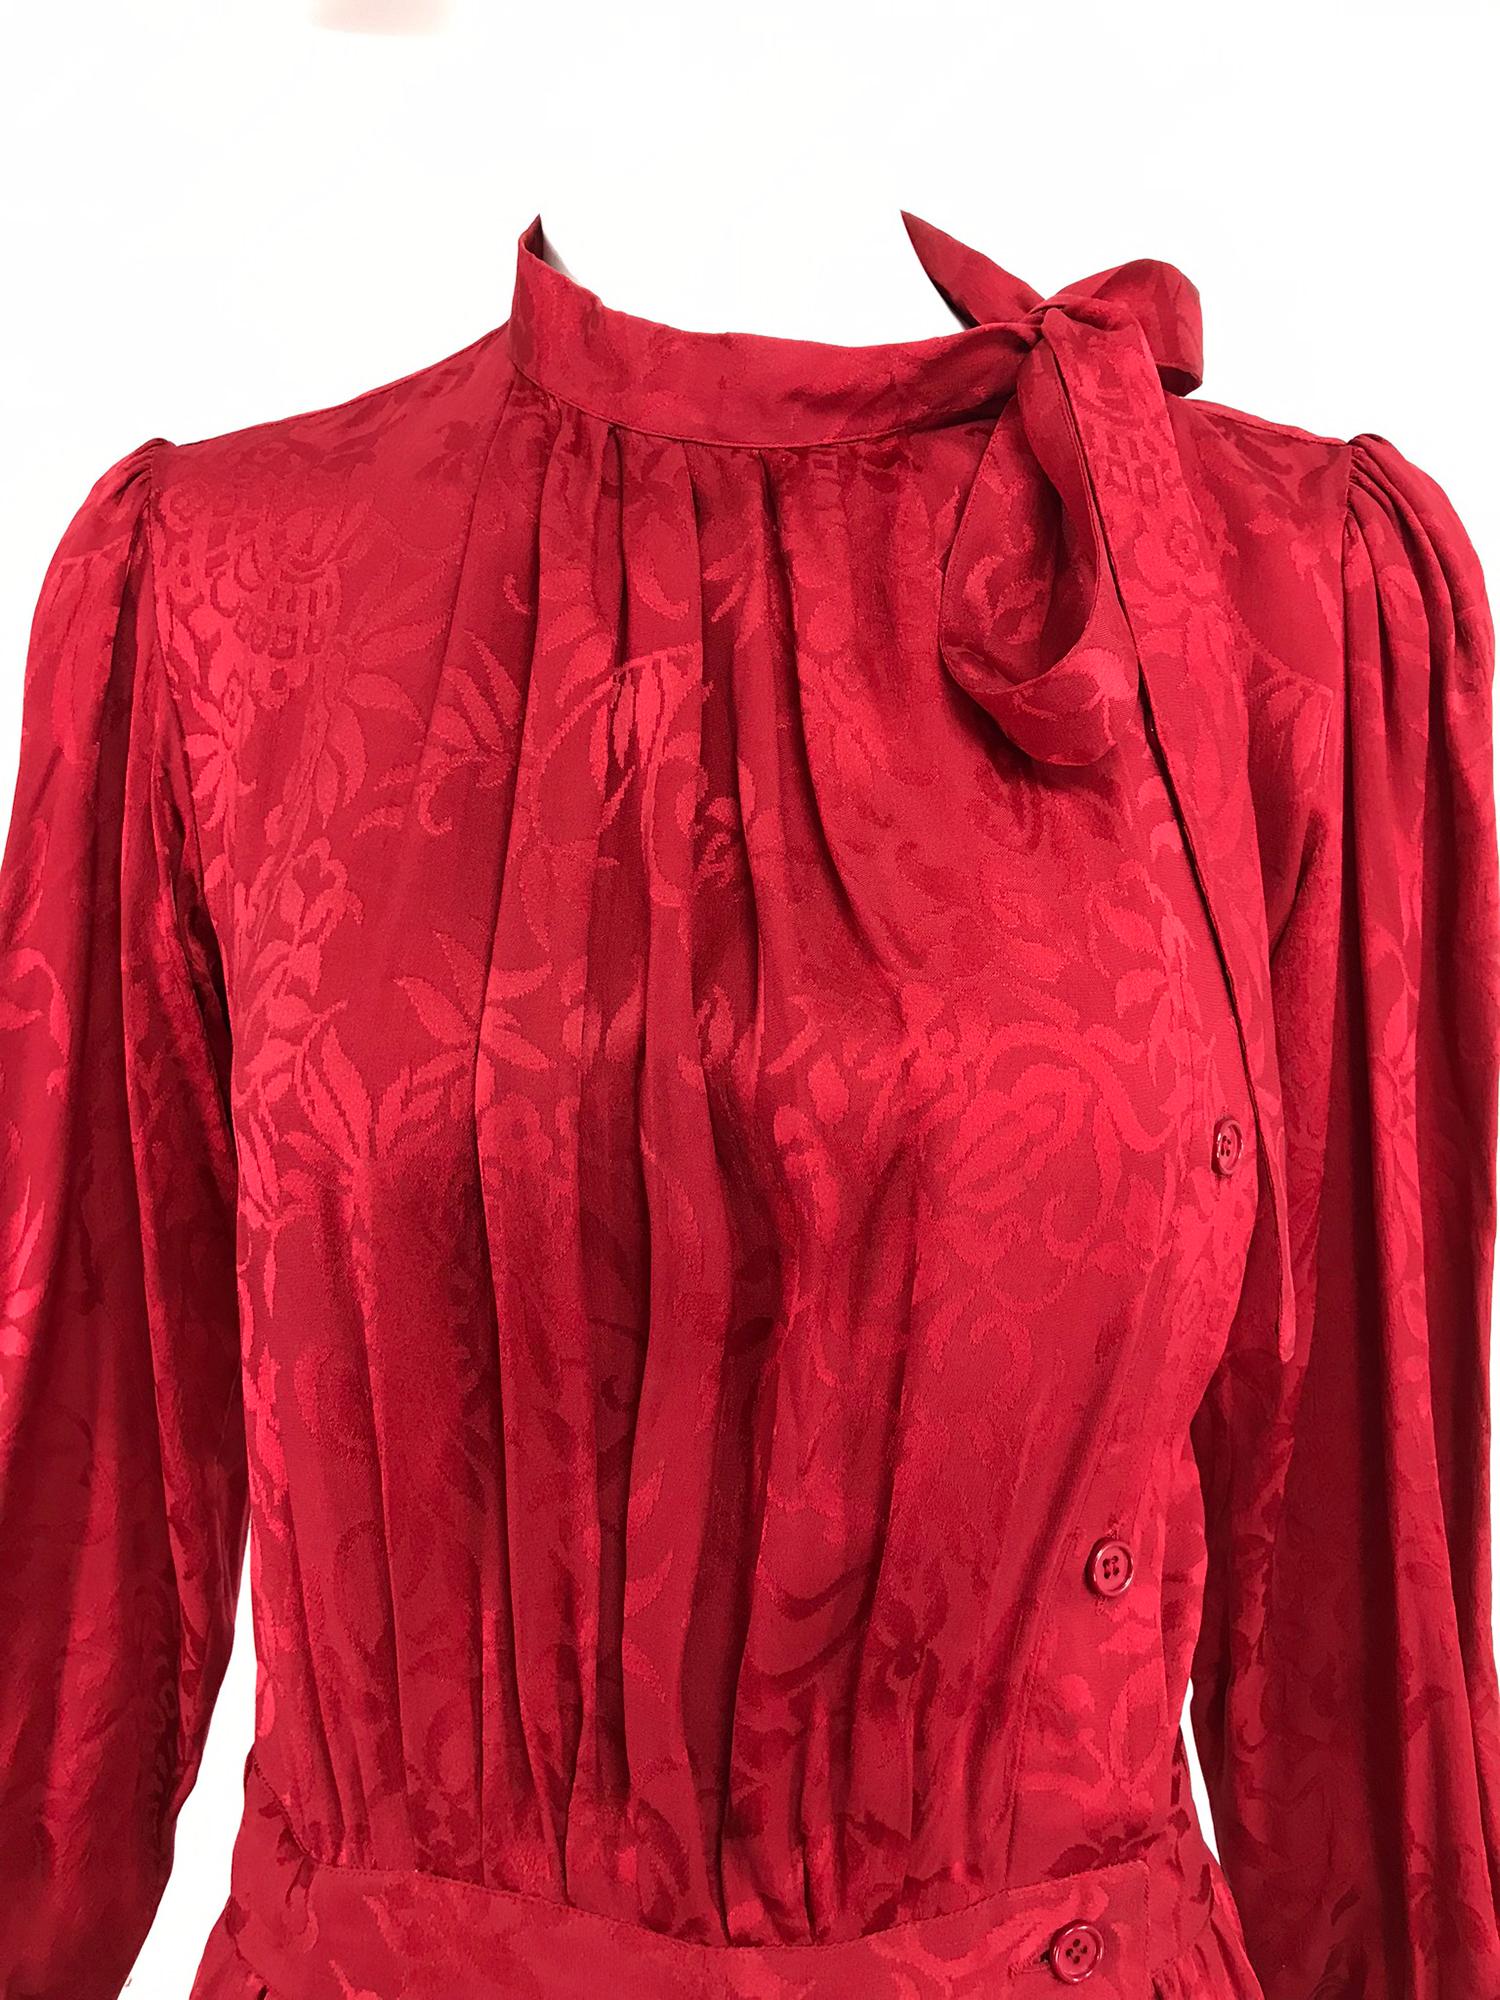 Robe à nœud papillon en jacquard de soie rouge Yves Saint Laurent from the  1970s. La robe en soie à motifs floraux rouge pomme d'amour comporte des manches longues semi-pleines avec des poignets boutonnés, le corsage a une encolure à bande avec des